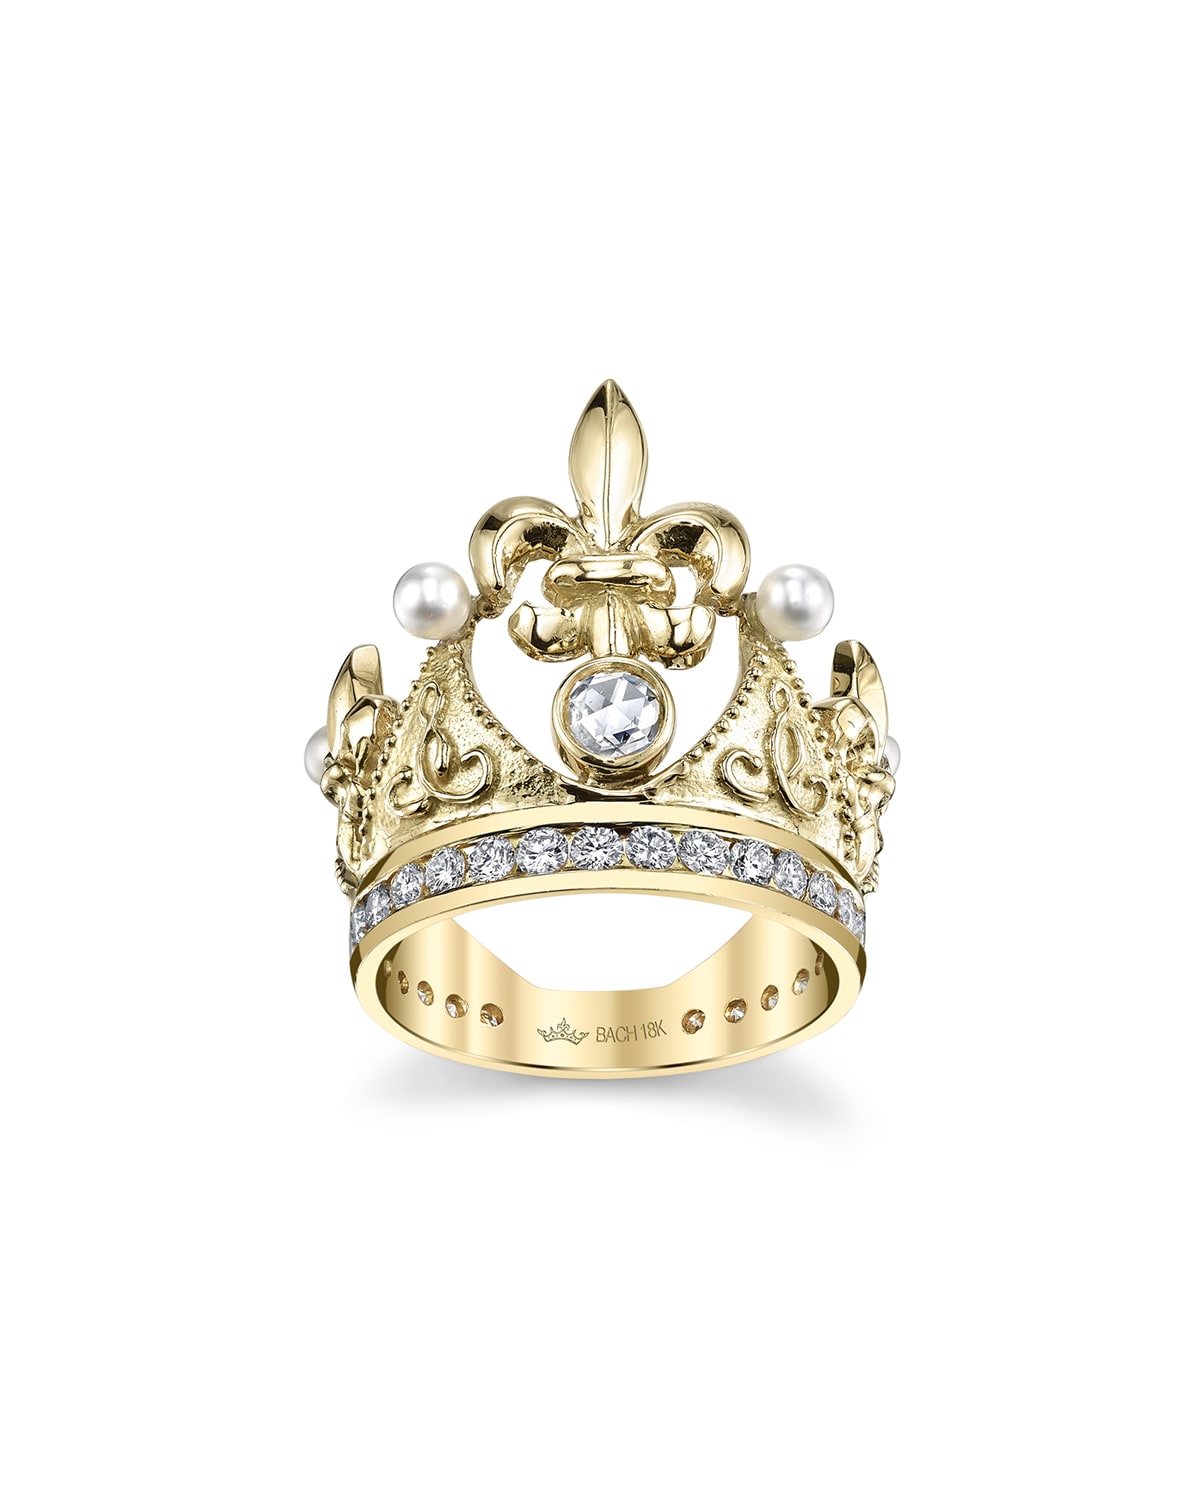 Cynthia Bach 18k Fleur-de-lis Diamond & Pearl Crown Ring In Gold